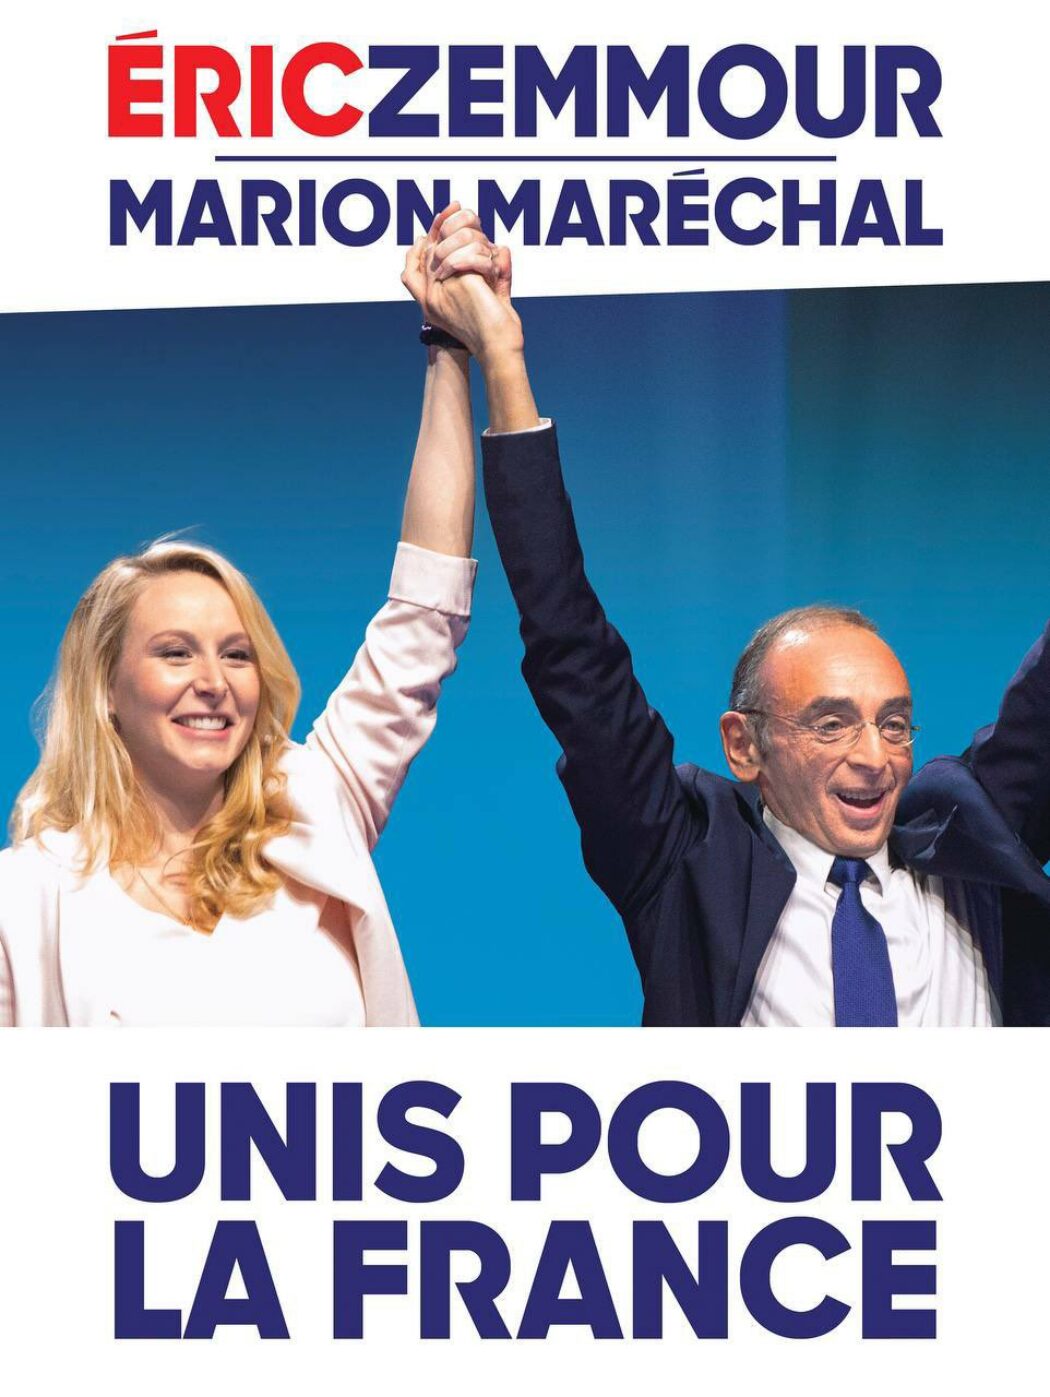 Marion Maréchal : “Chez Eric Zemmour, la droite trouvera une nouvelle maison commune dans laquelle elle pourra défendre ses idées”